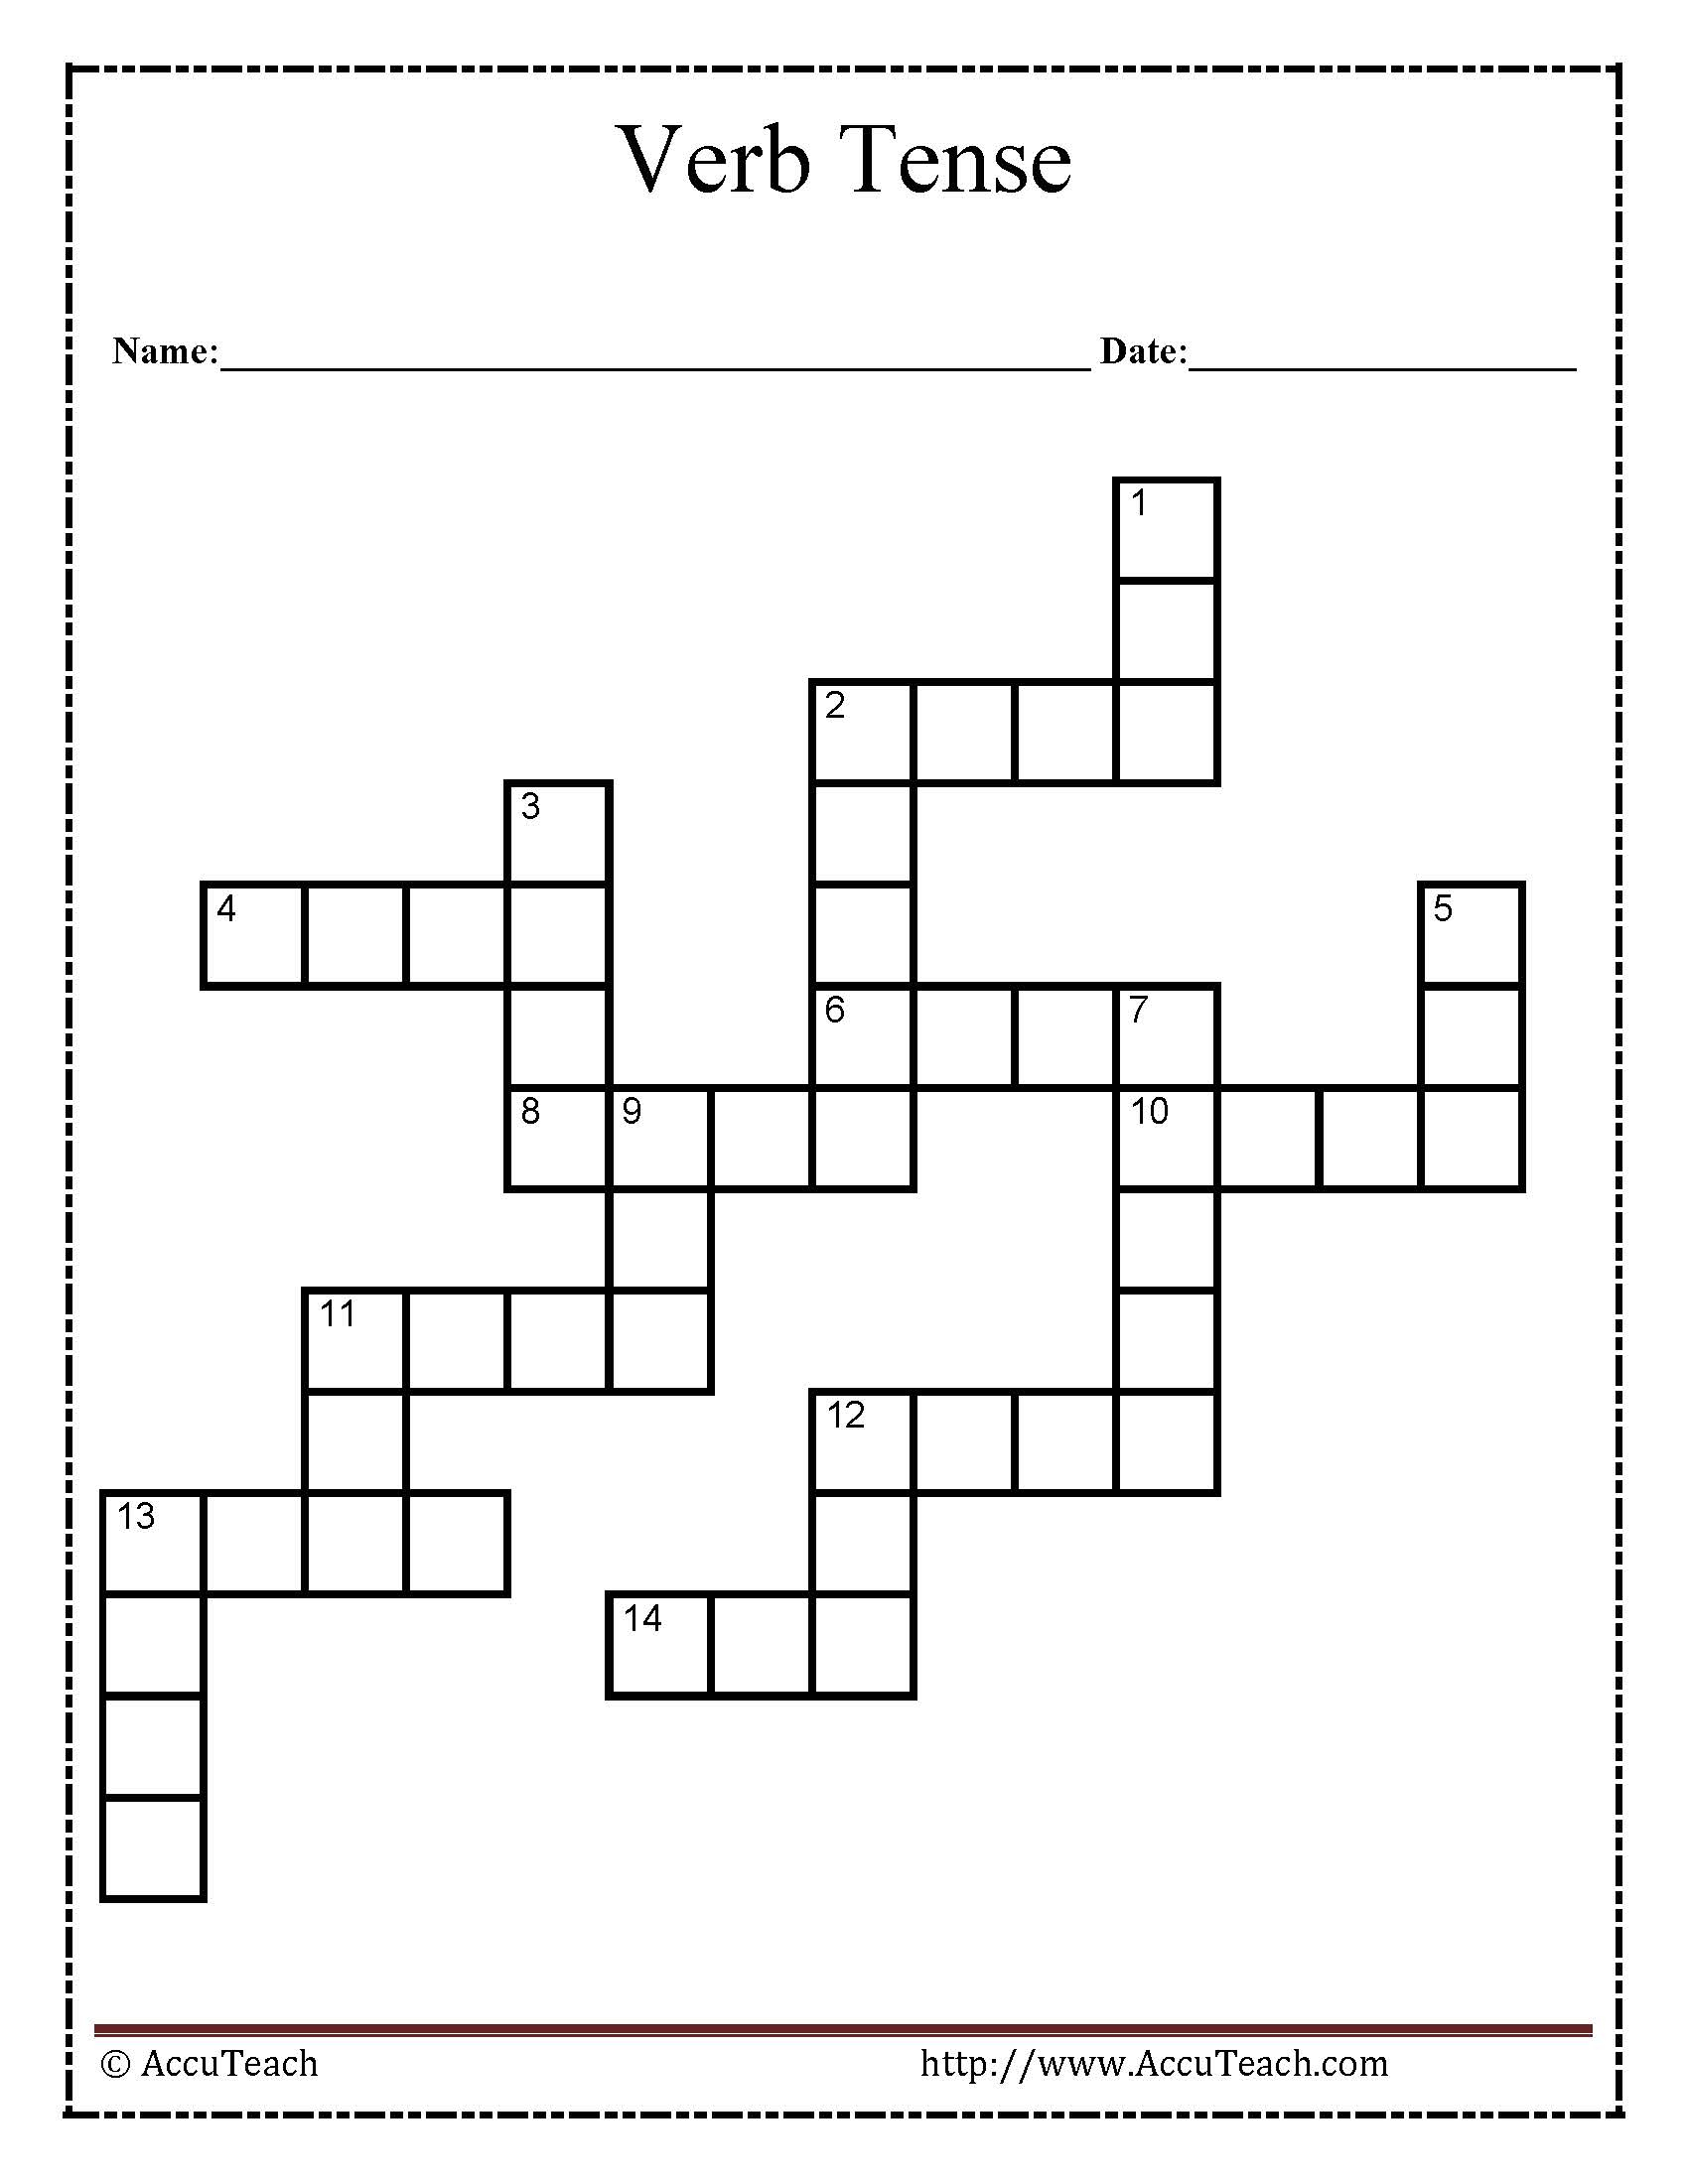 Verb Tense Crossword Puzzle Worksheet - Verb Crossword Puzzles Printable